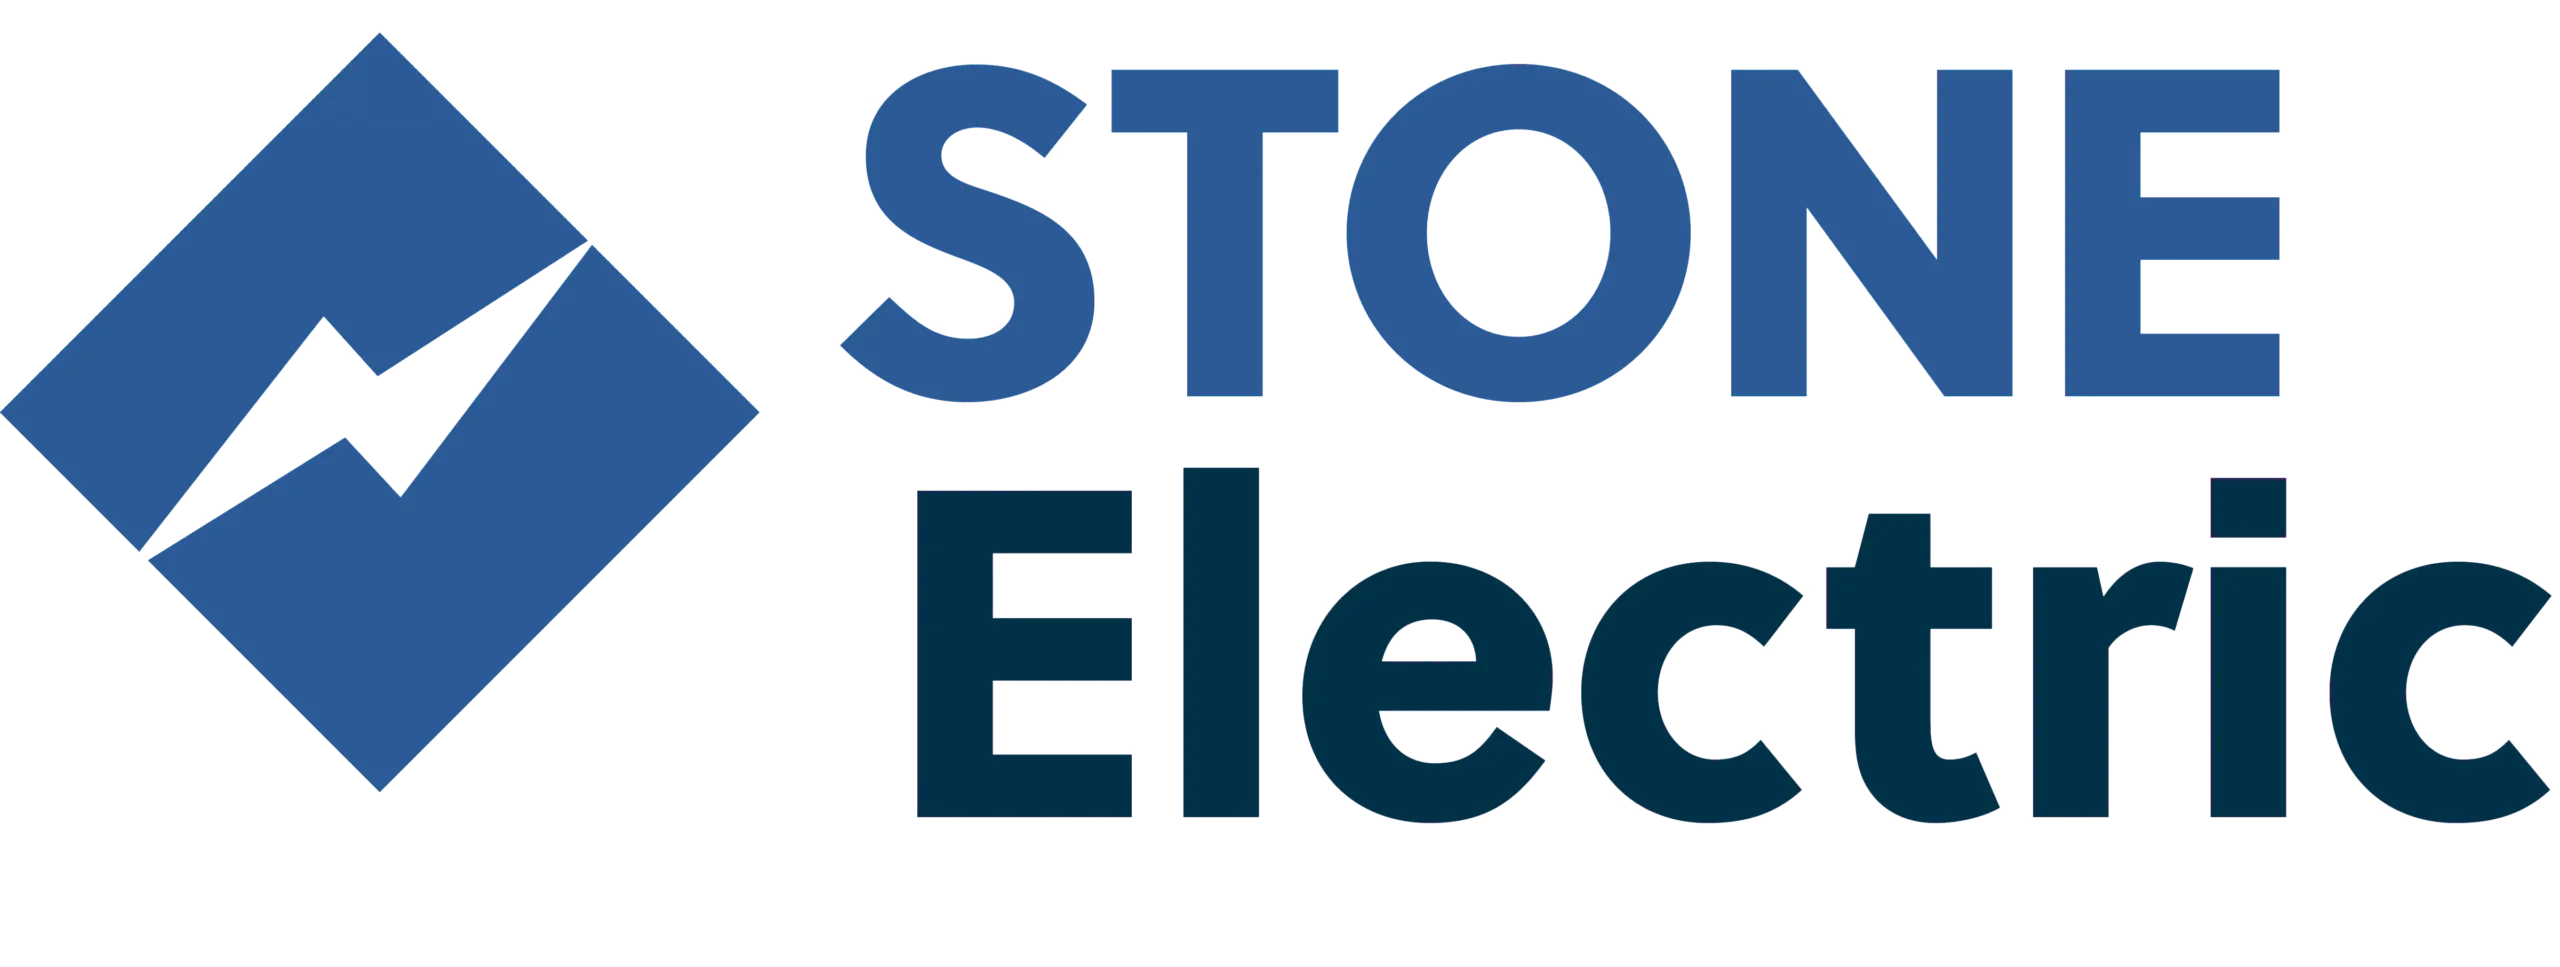 Stone Electric in Denver, CO - Logo